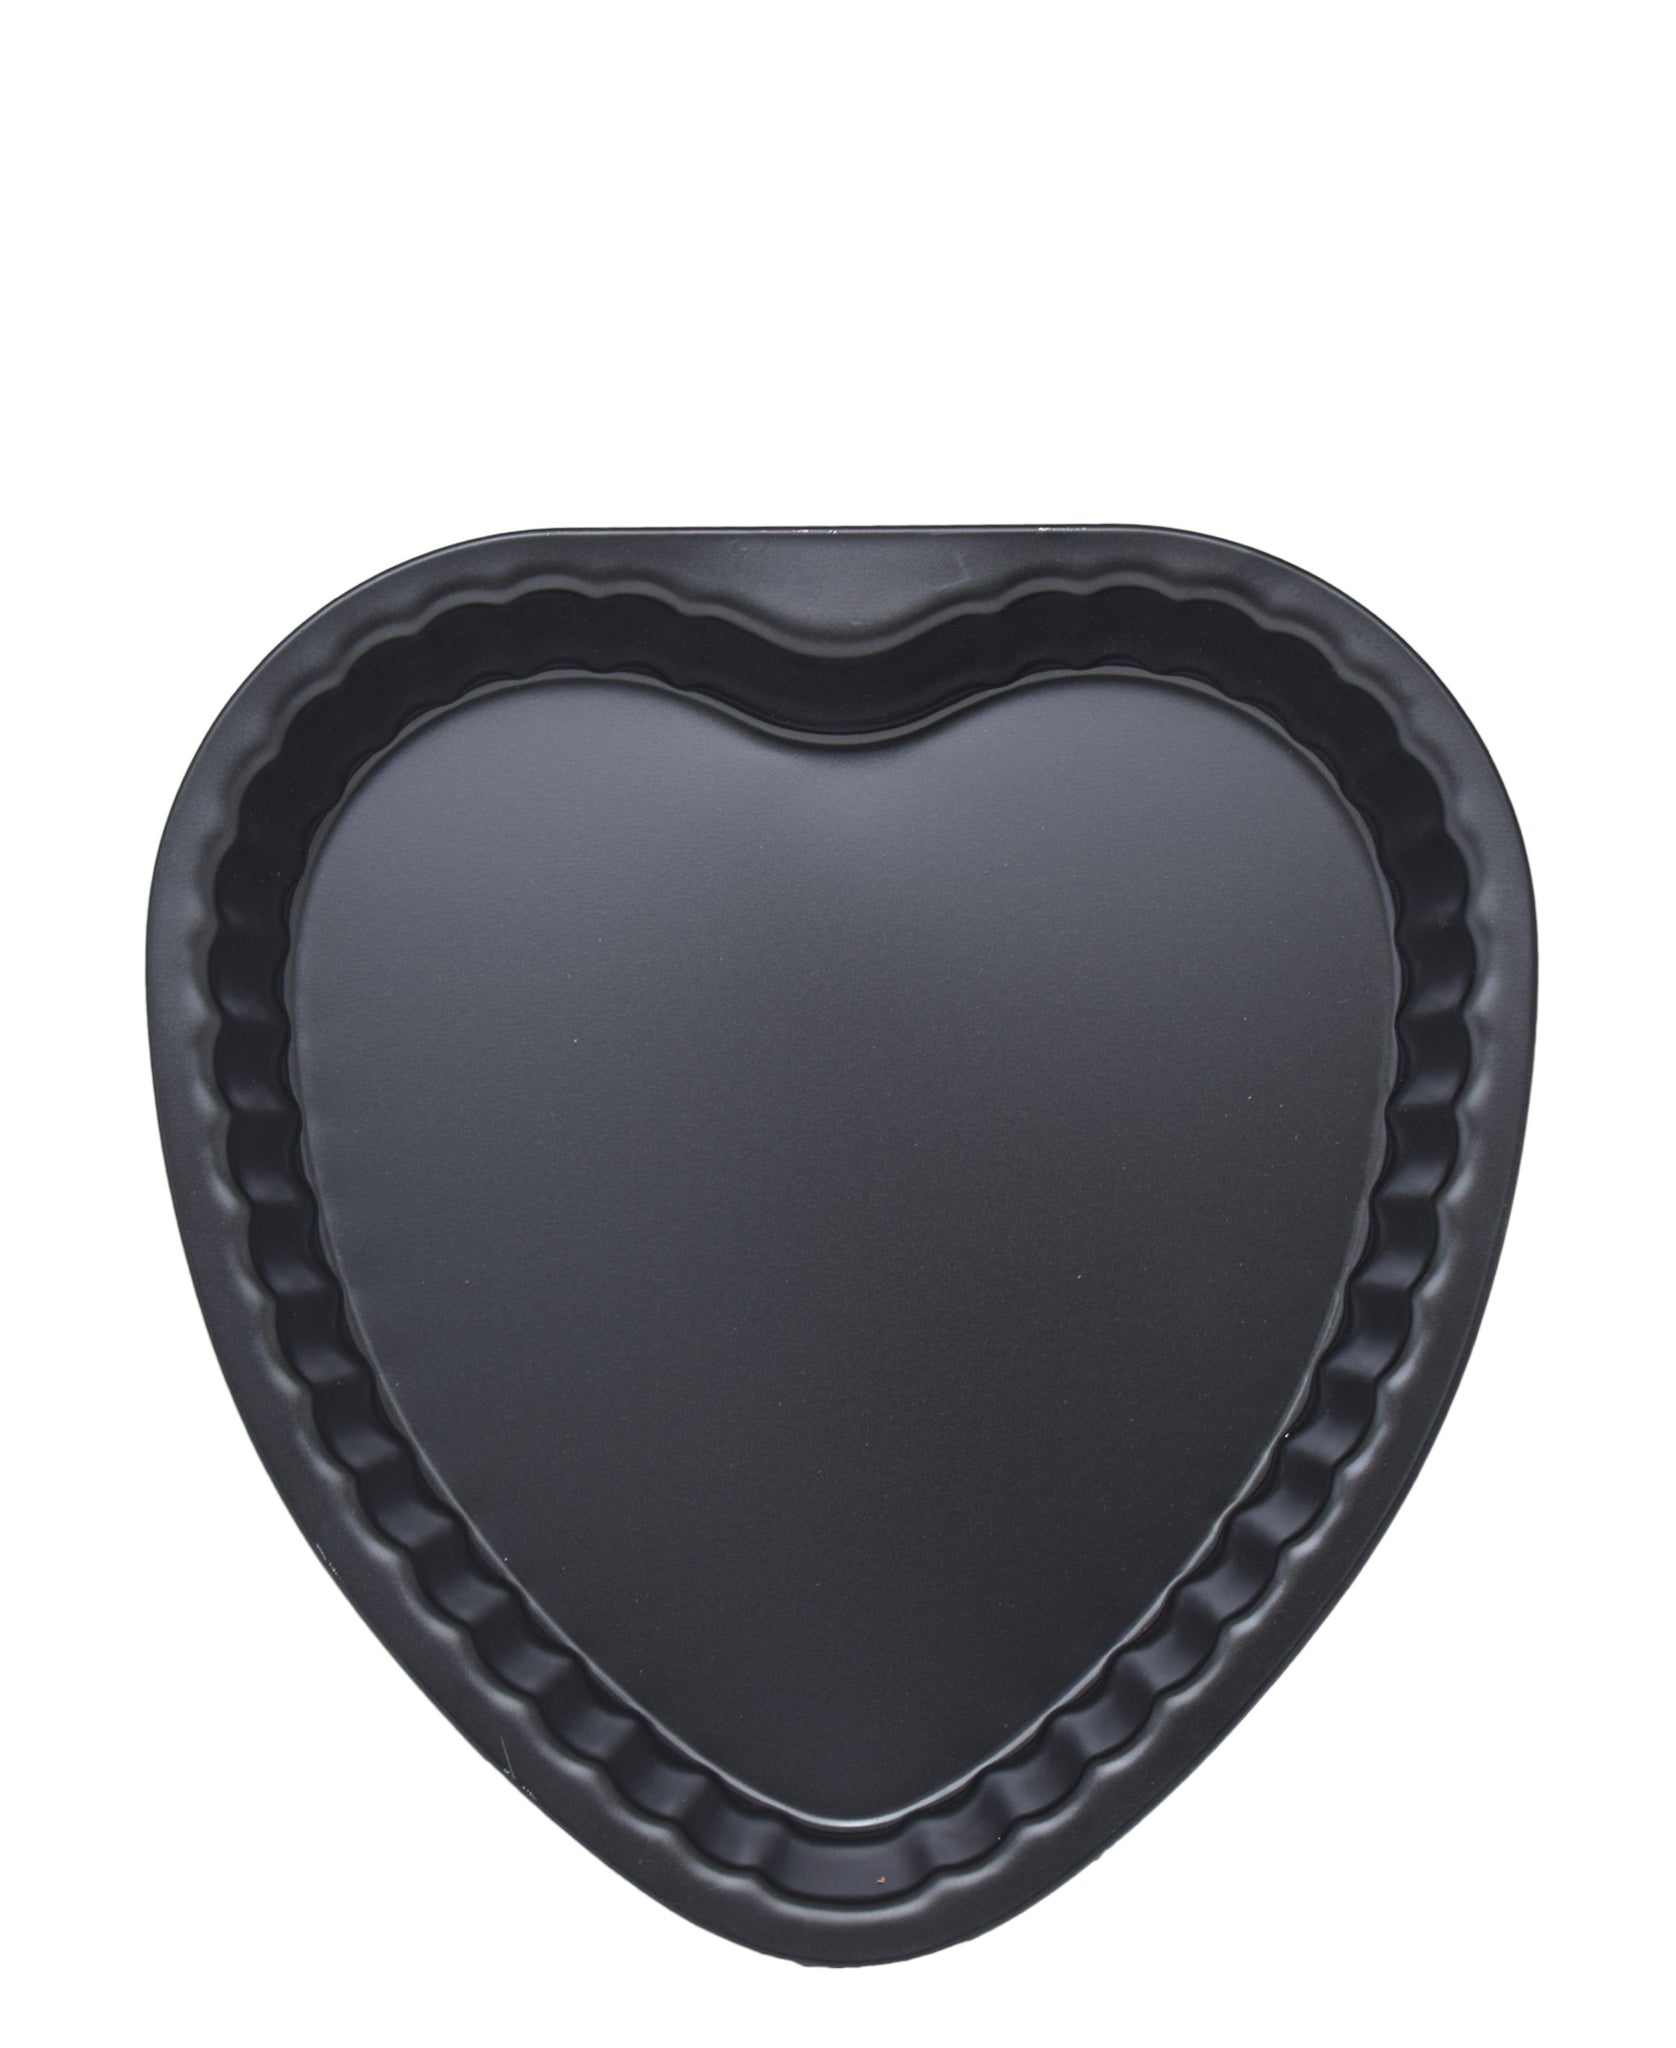 Guardini Heart Shaped Cake Tin 25cm - Black